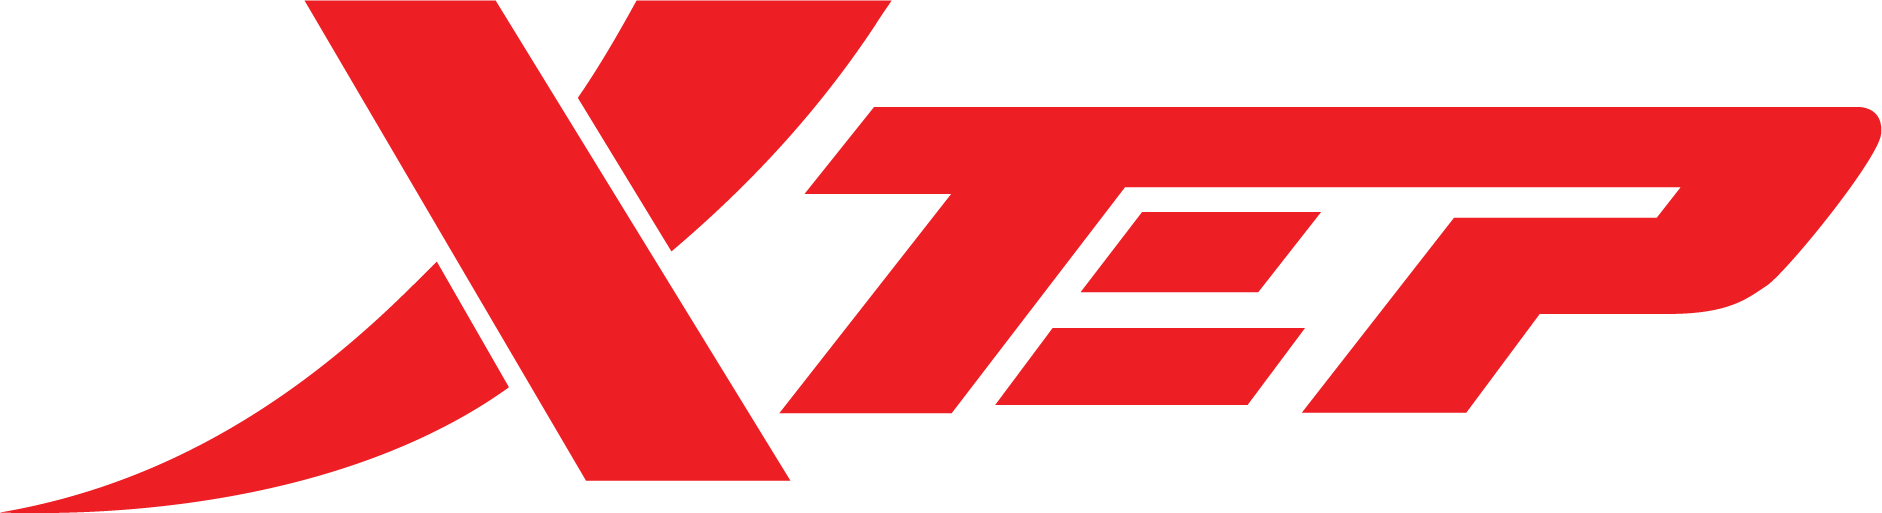 XTEP VIỆT NAM - Thương hiệu thời trang thể thao dẫn đầu